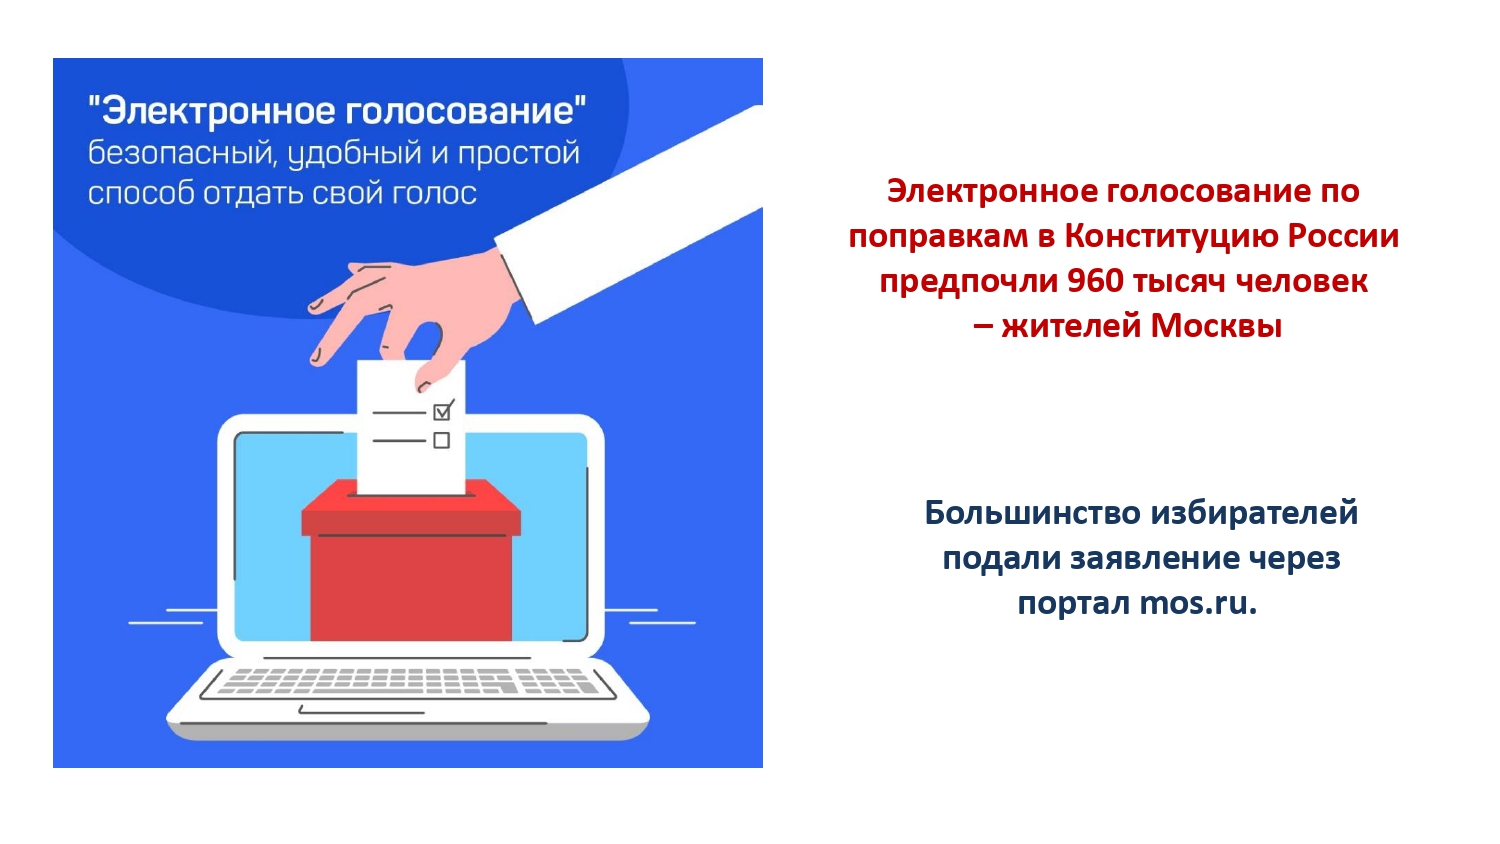 Где можно проголосовать в московской области